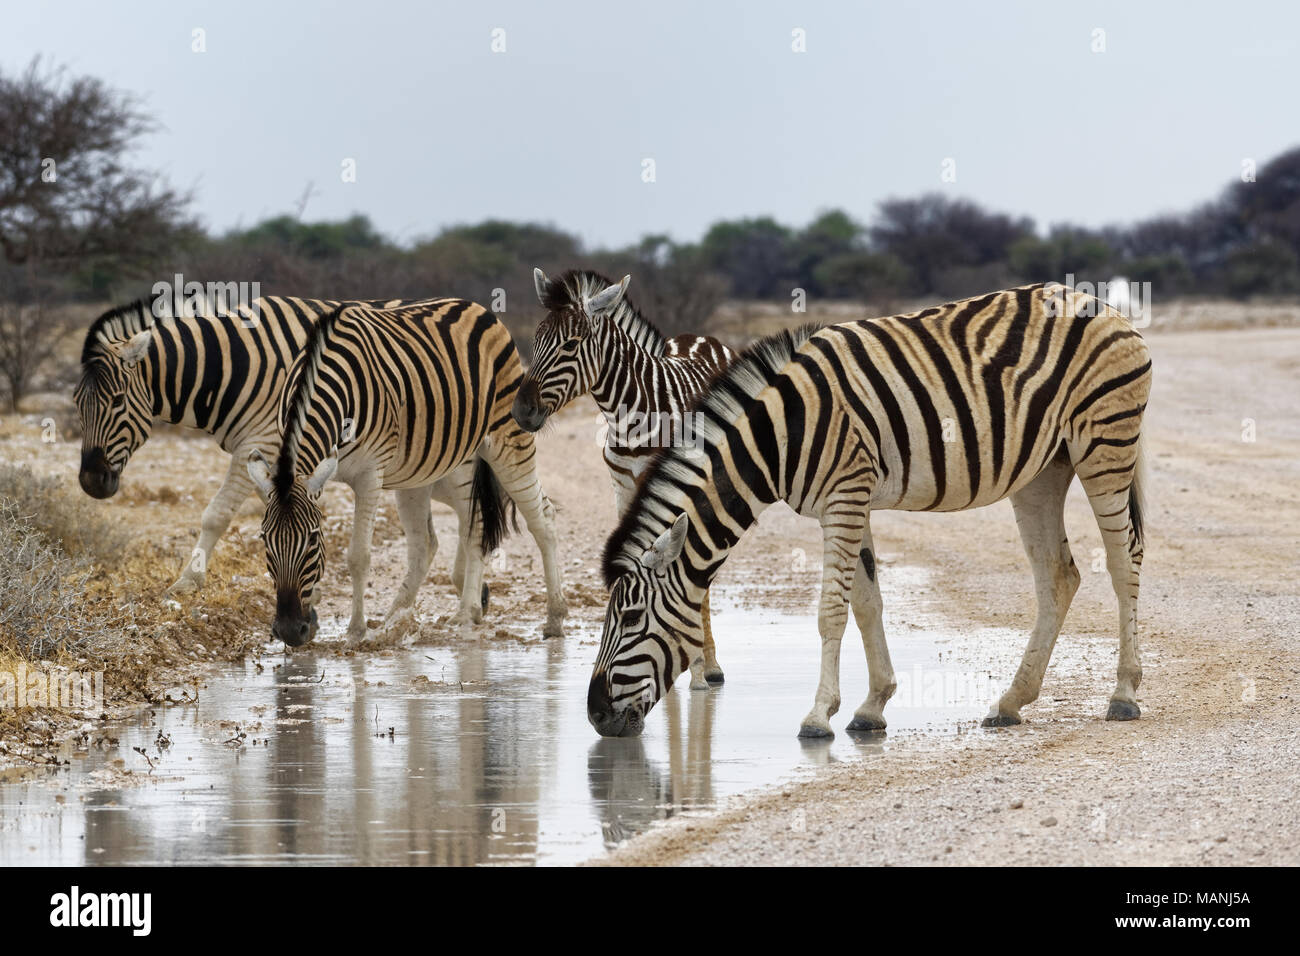 Zèbres de Burchell (Equus quagga burchellii), adultes et poulain sur un chemin de terre, de boire l'eau de pluie à partir d'une flaque, Etosha National Park, Namibie, Afrique Banque D'Images